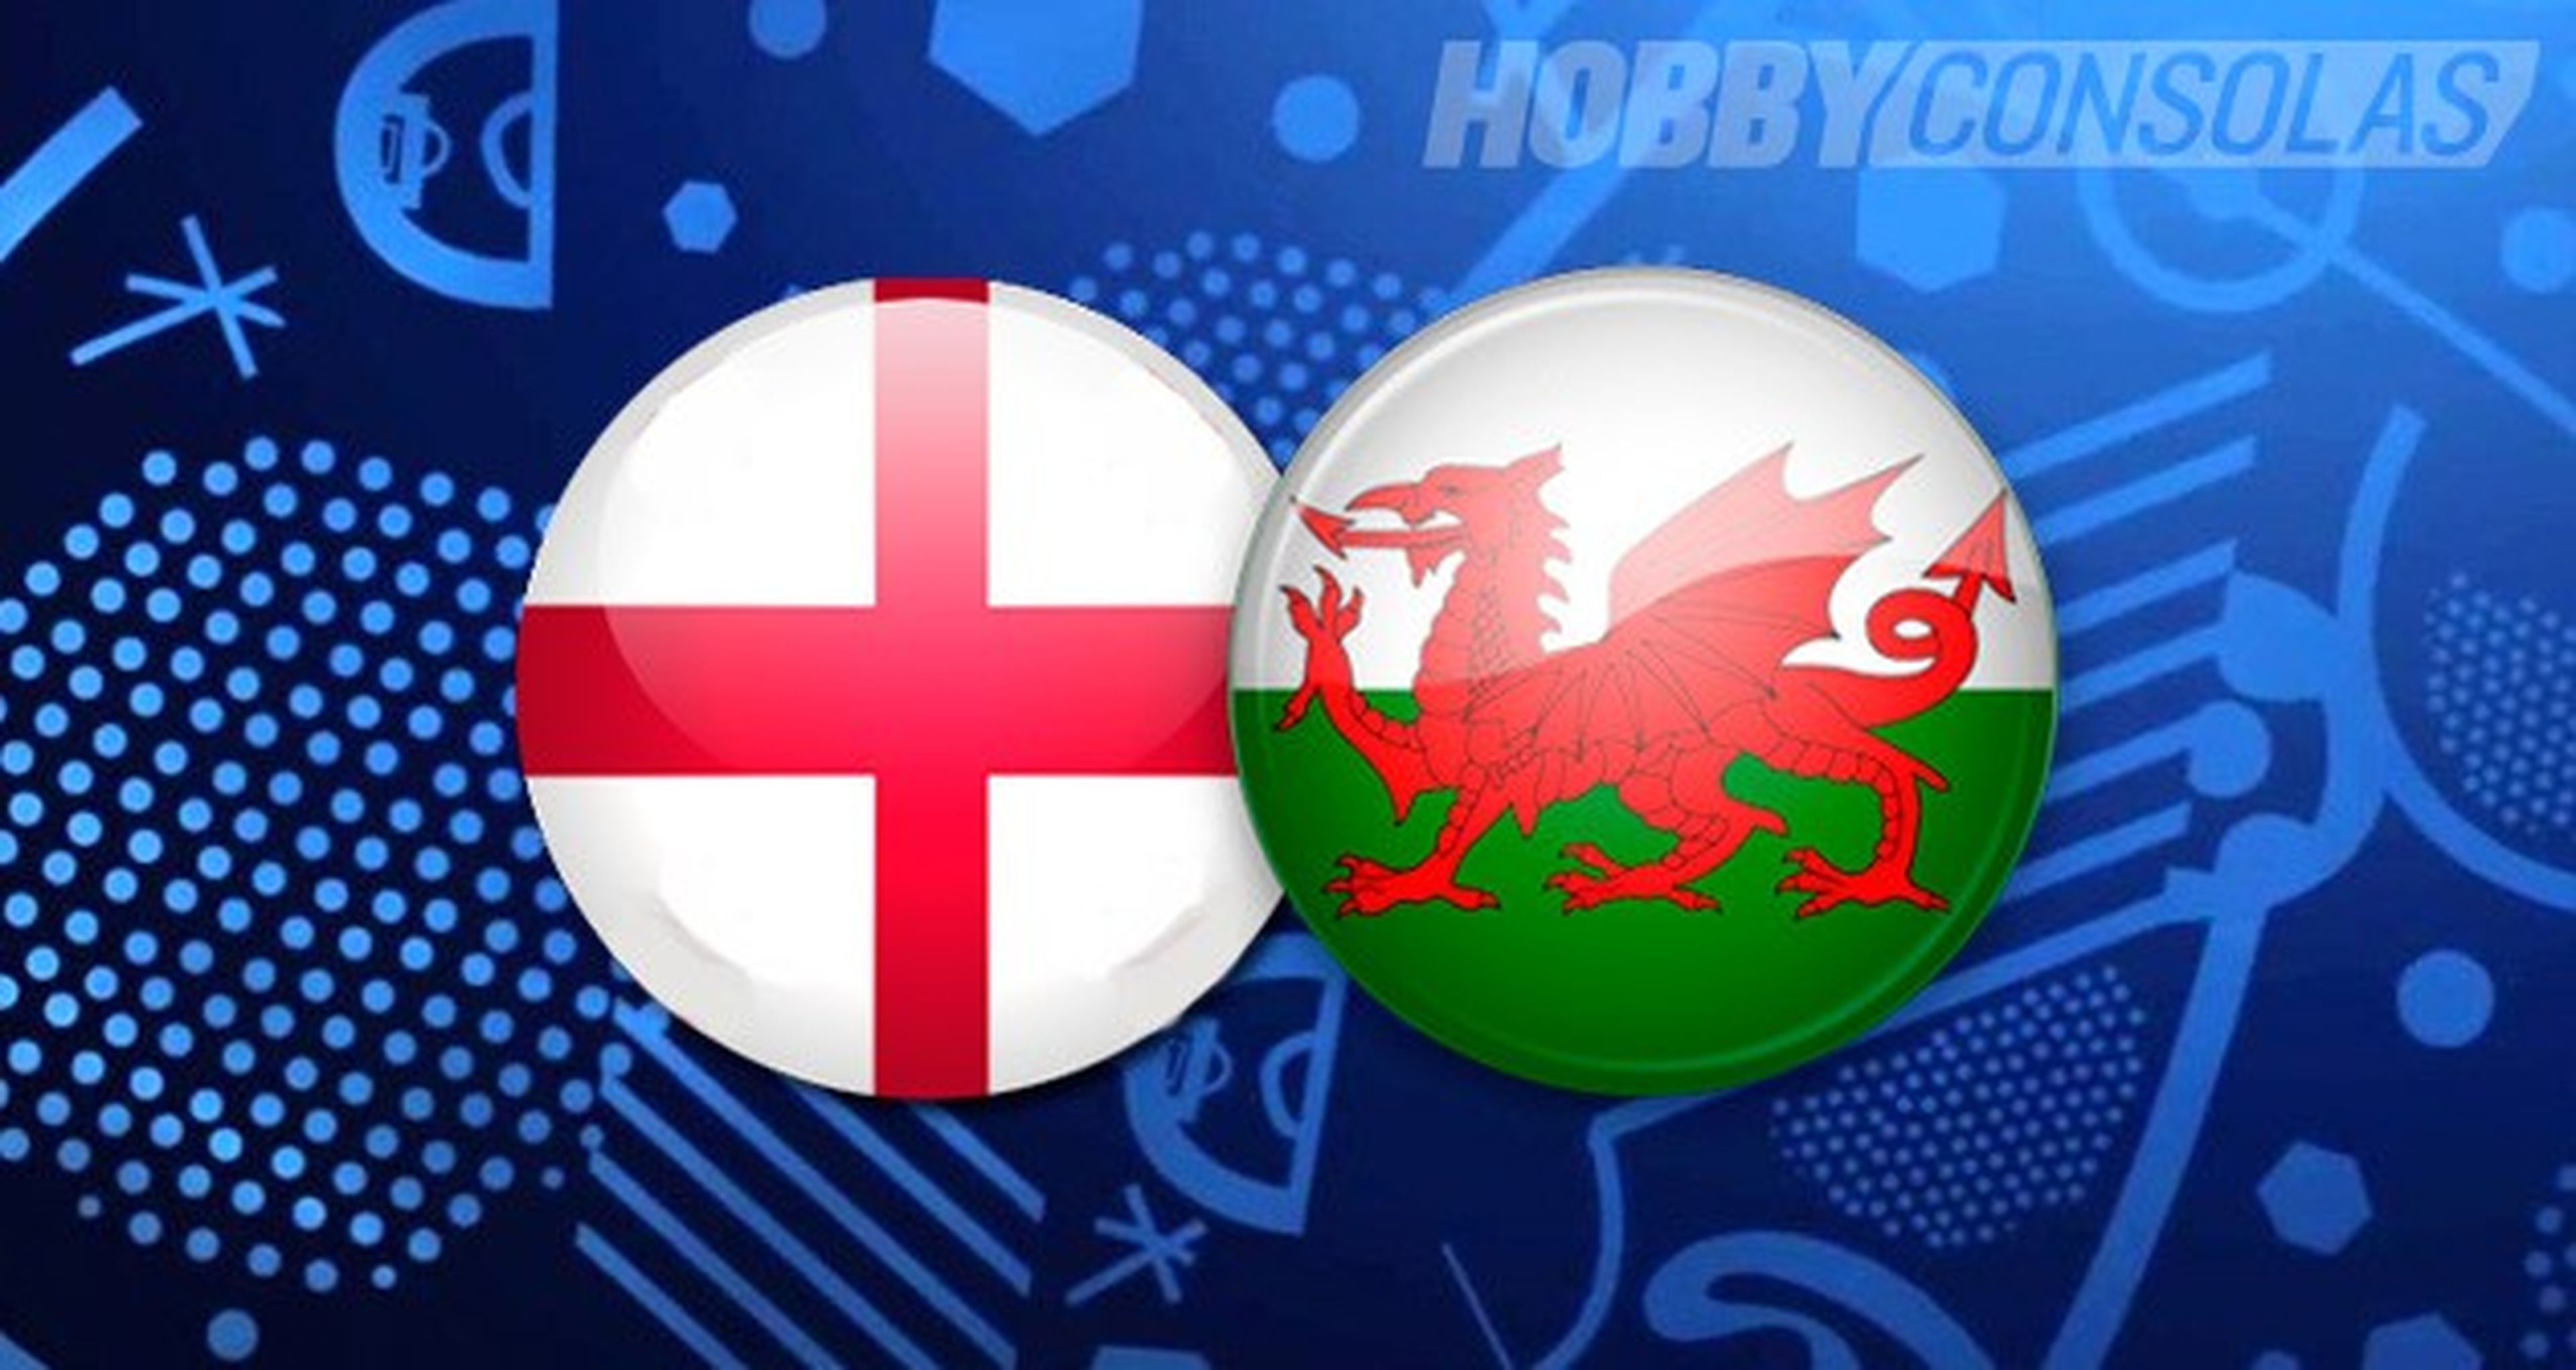 Inglaterra-Gales, cómo y dónde ver online gratis en streaming el partido de la Eurocopa 2016